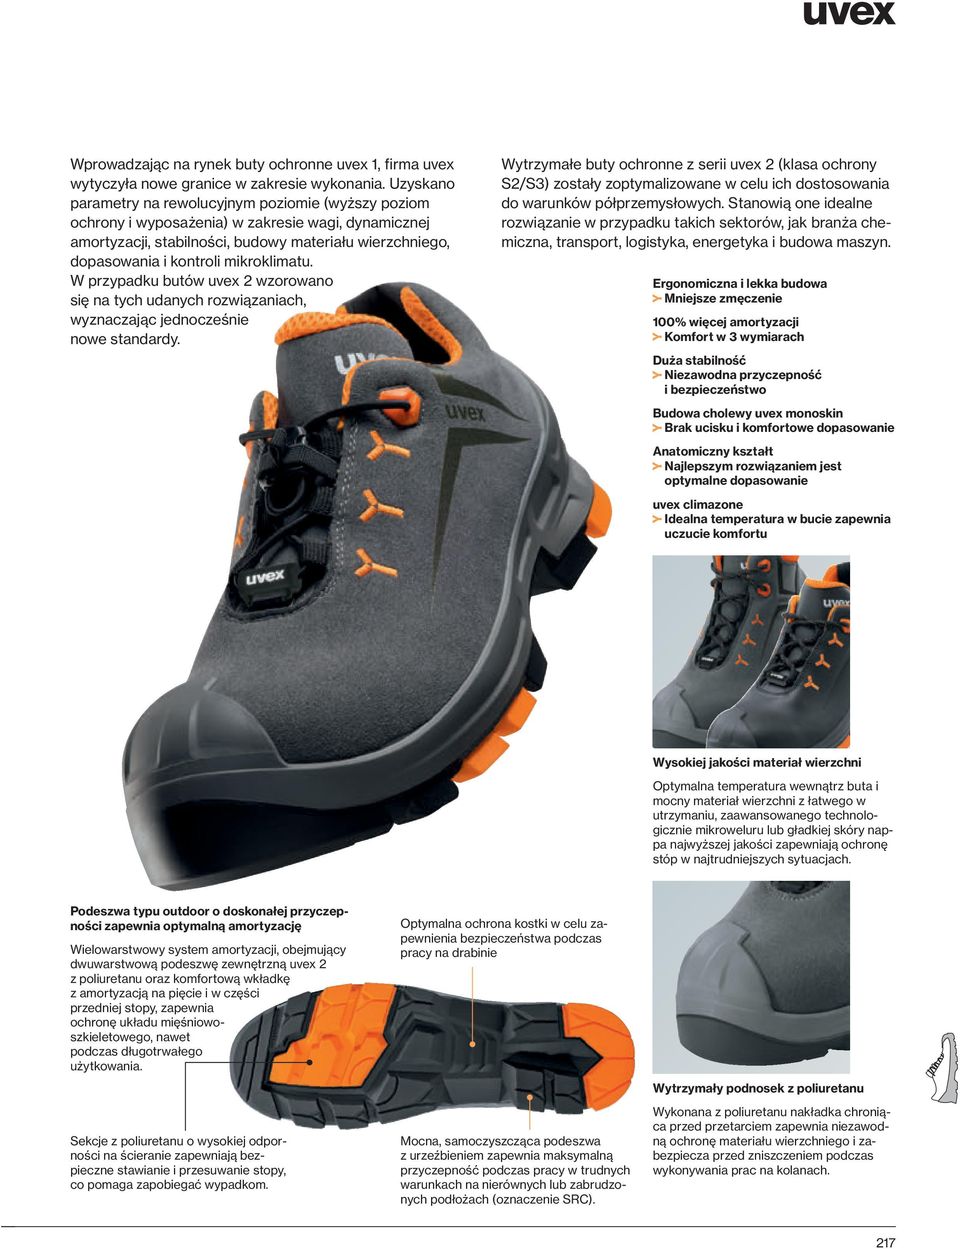 mikroklimatu. W przypadku butów uvex 2 wzorowano się na tych udanych rozwiązaniach, wyznaczając jednocześnie nowe standardy.